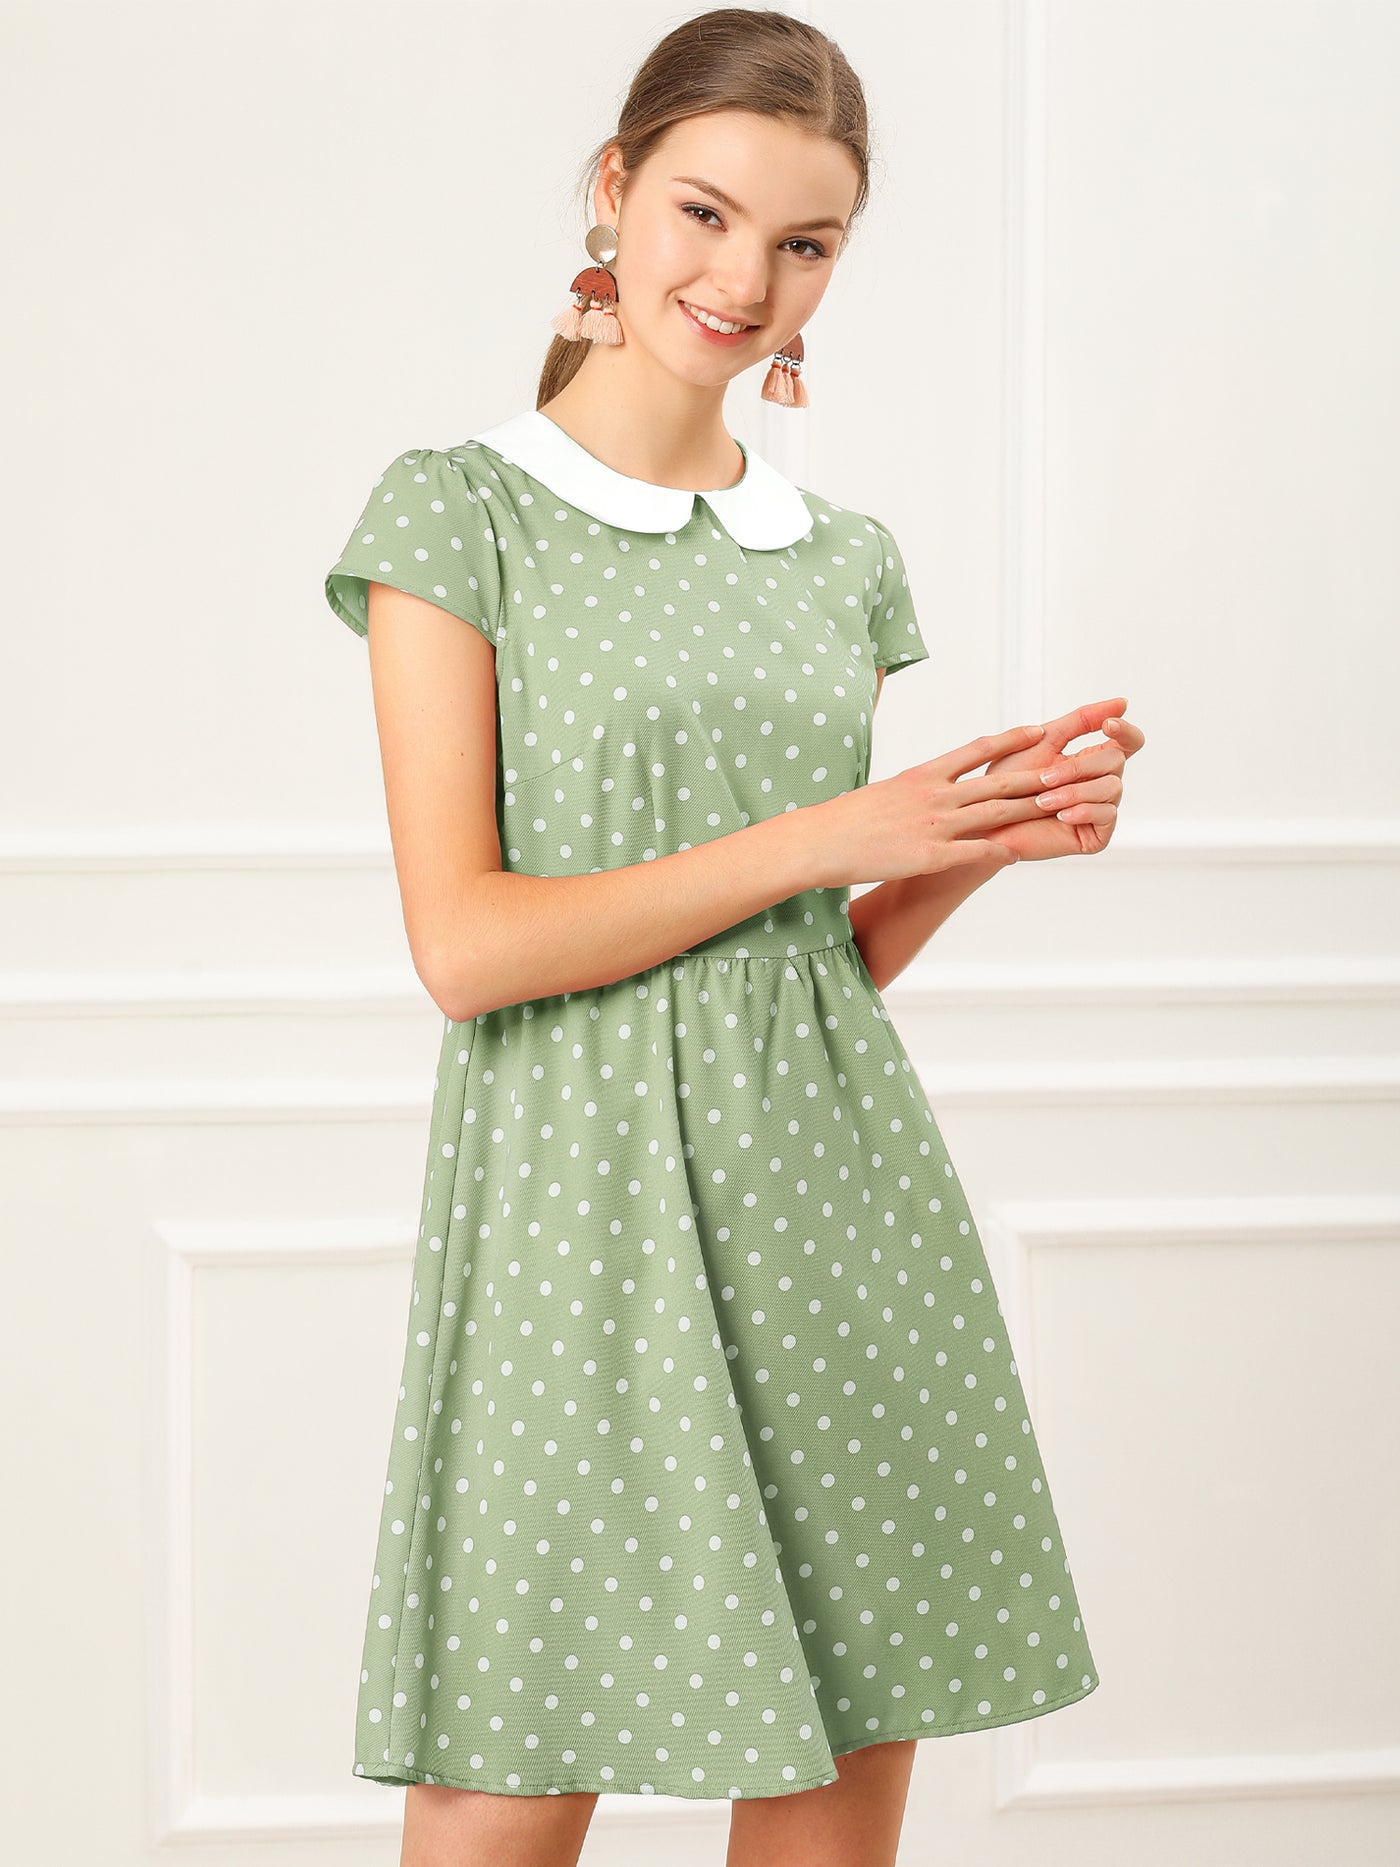 Allegra K Peter Pan Collar Short Sleeve Contrast A-Line Polka Dots Dress